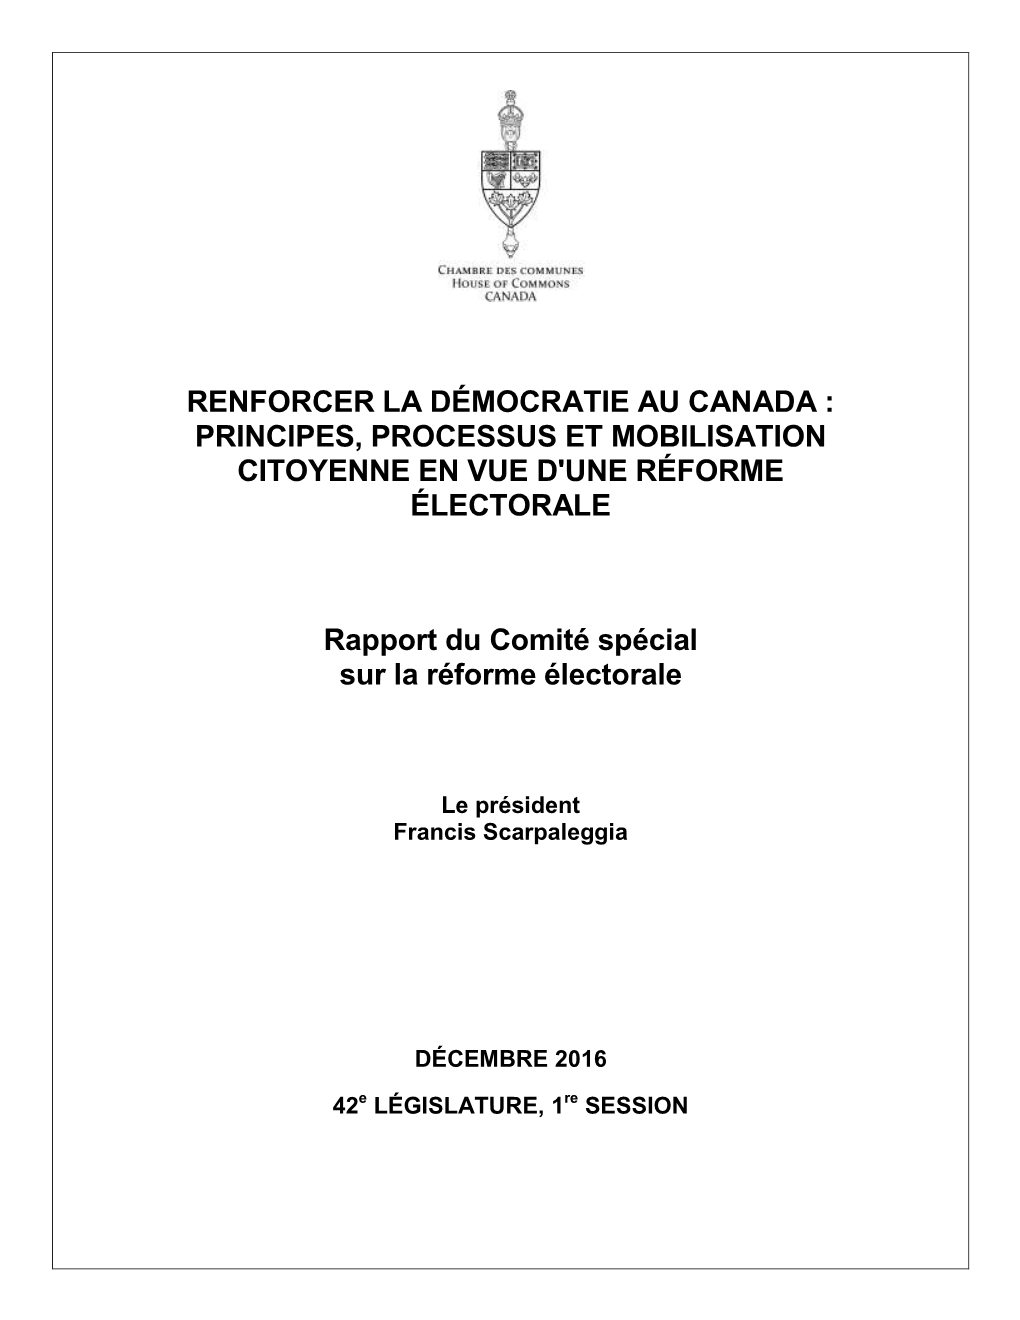 Renforcer La Démocratie Au Canada: Principes